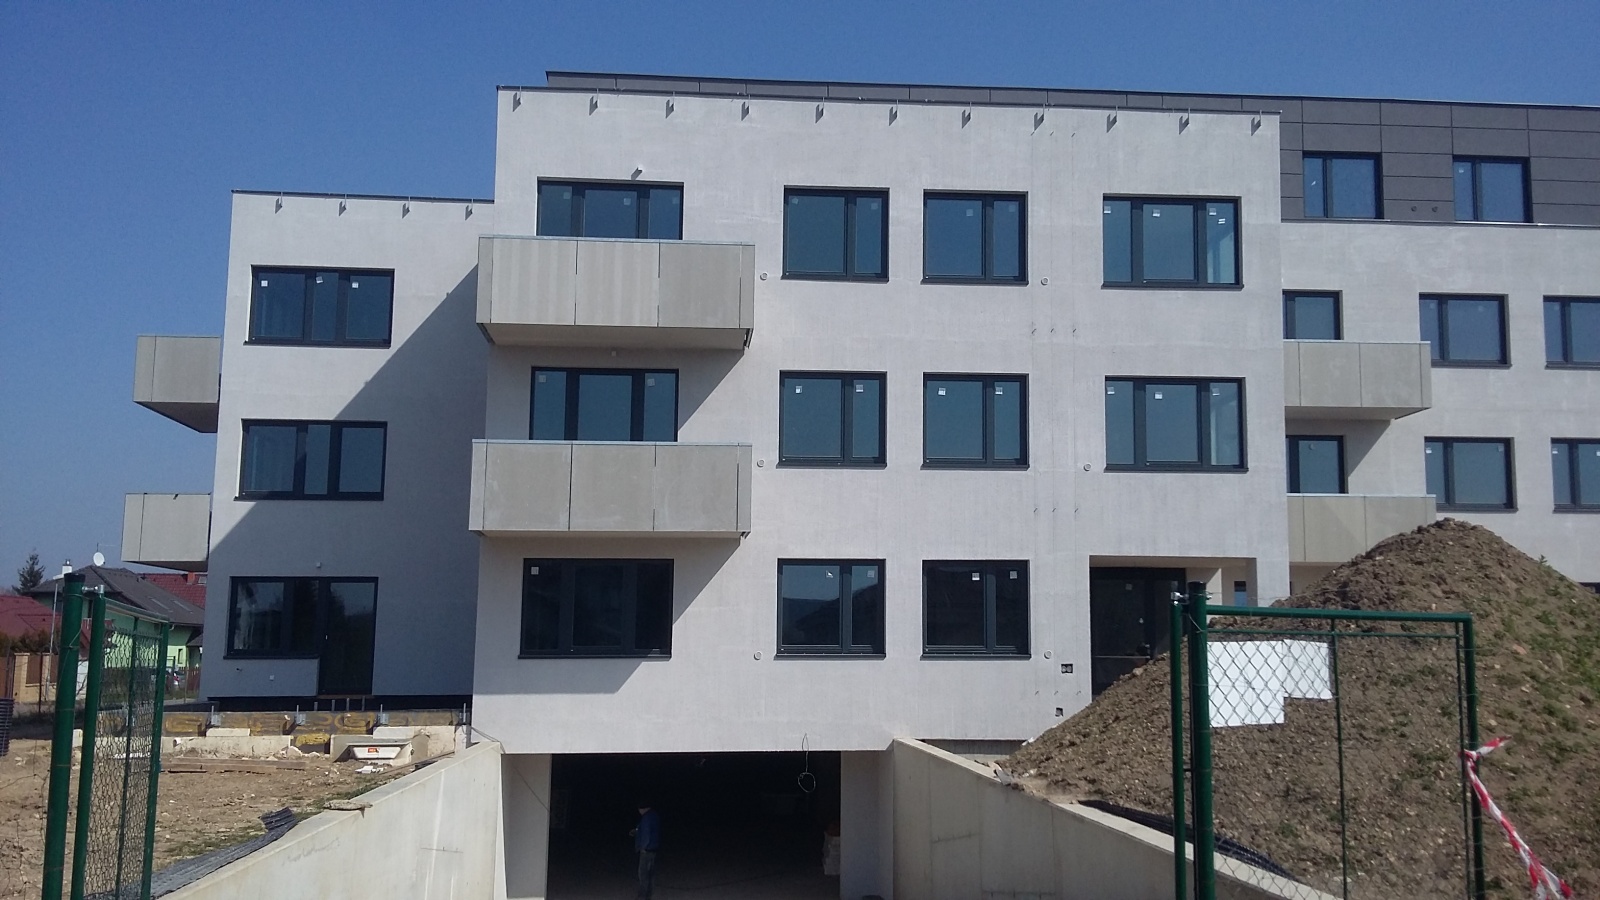 Byt 3+kk, 89.30 m2, Horoměřice, Projekt Višnovka - bytové domy